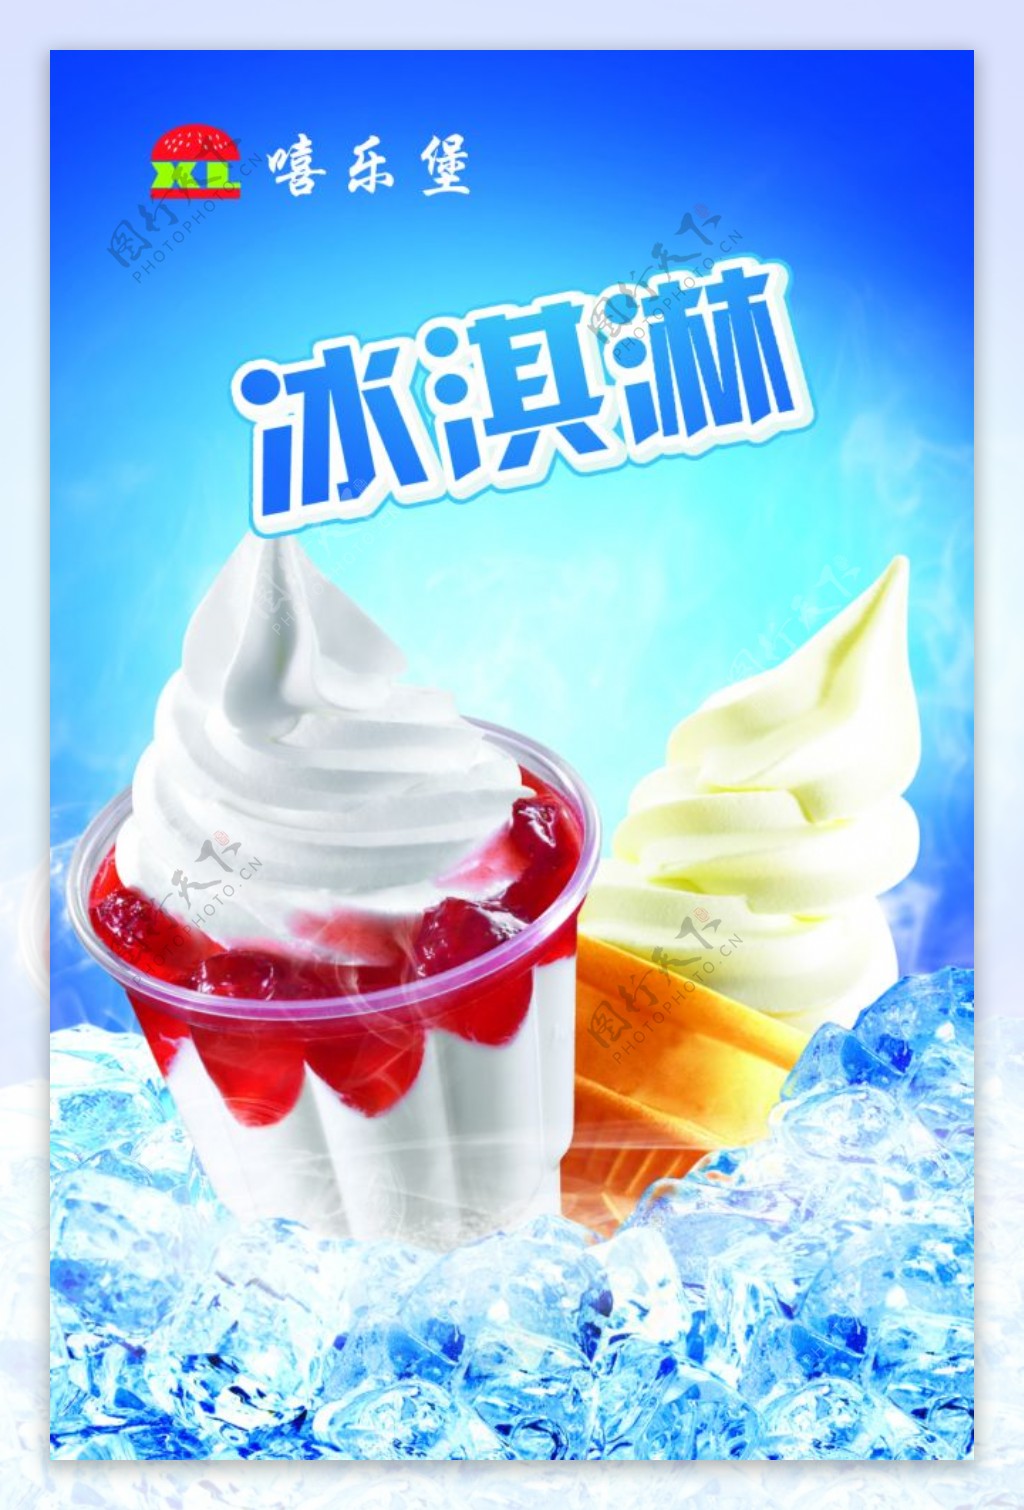 花式冰淇淋灯箱图片素材-编号08746354-图行天下